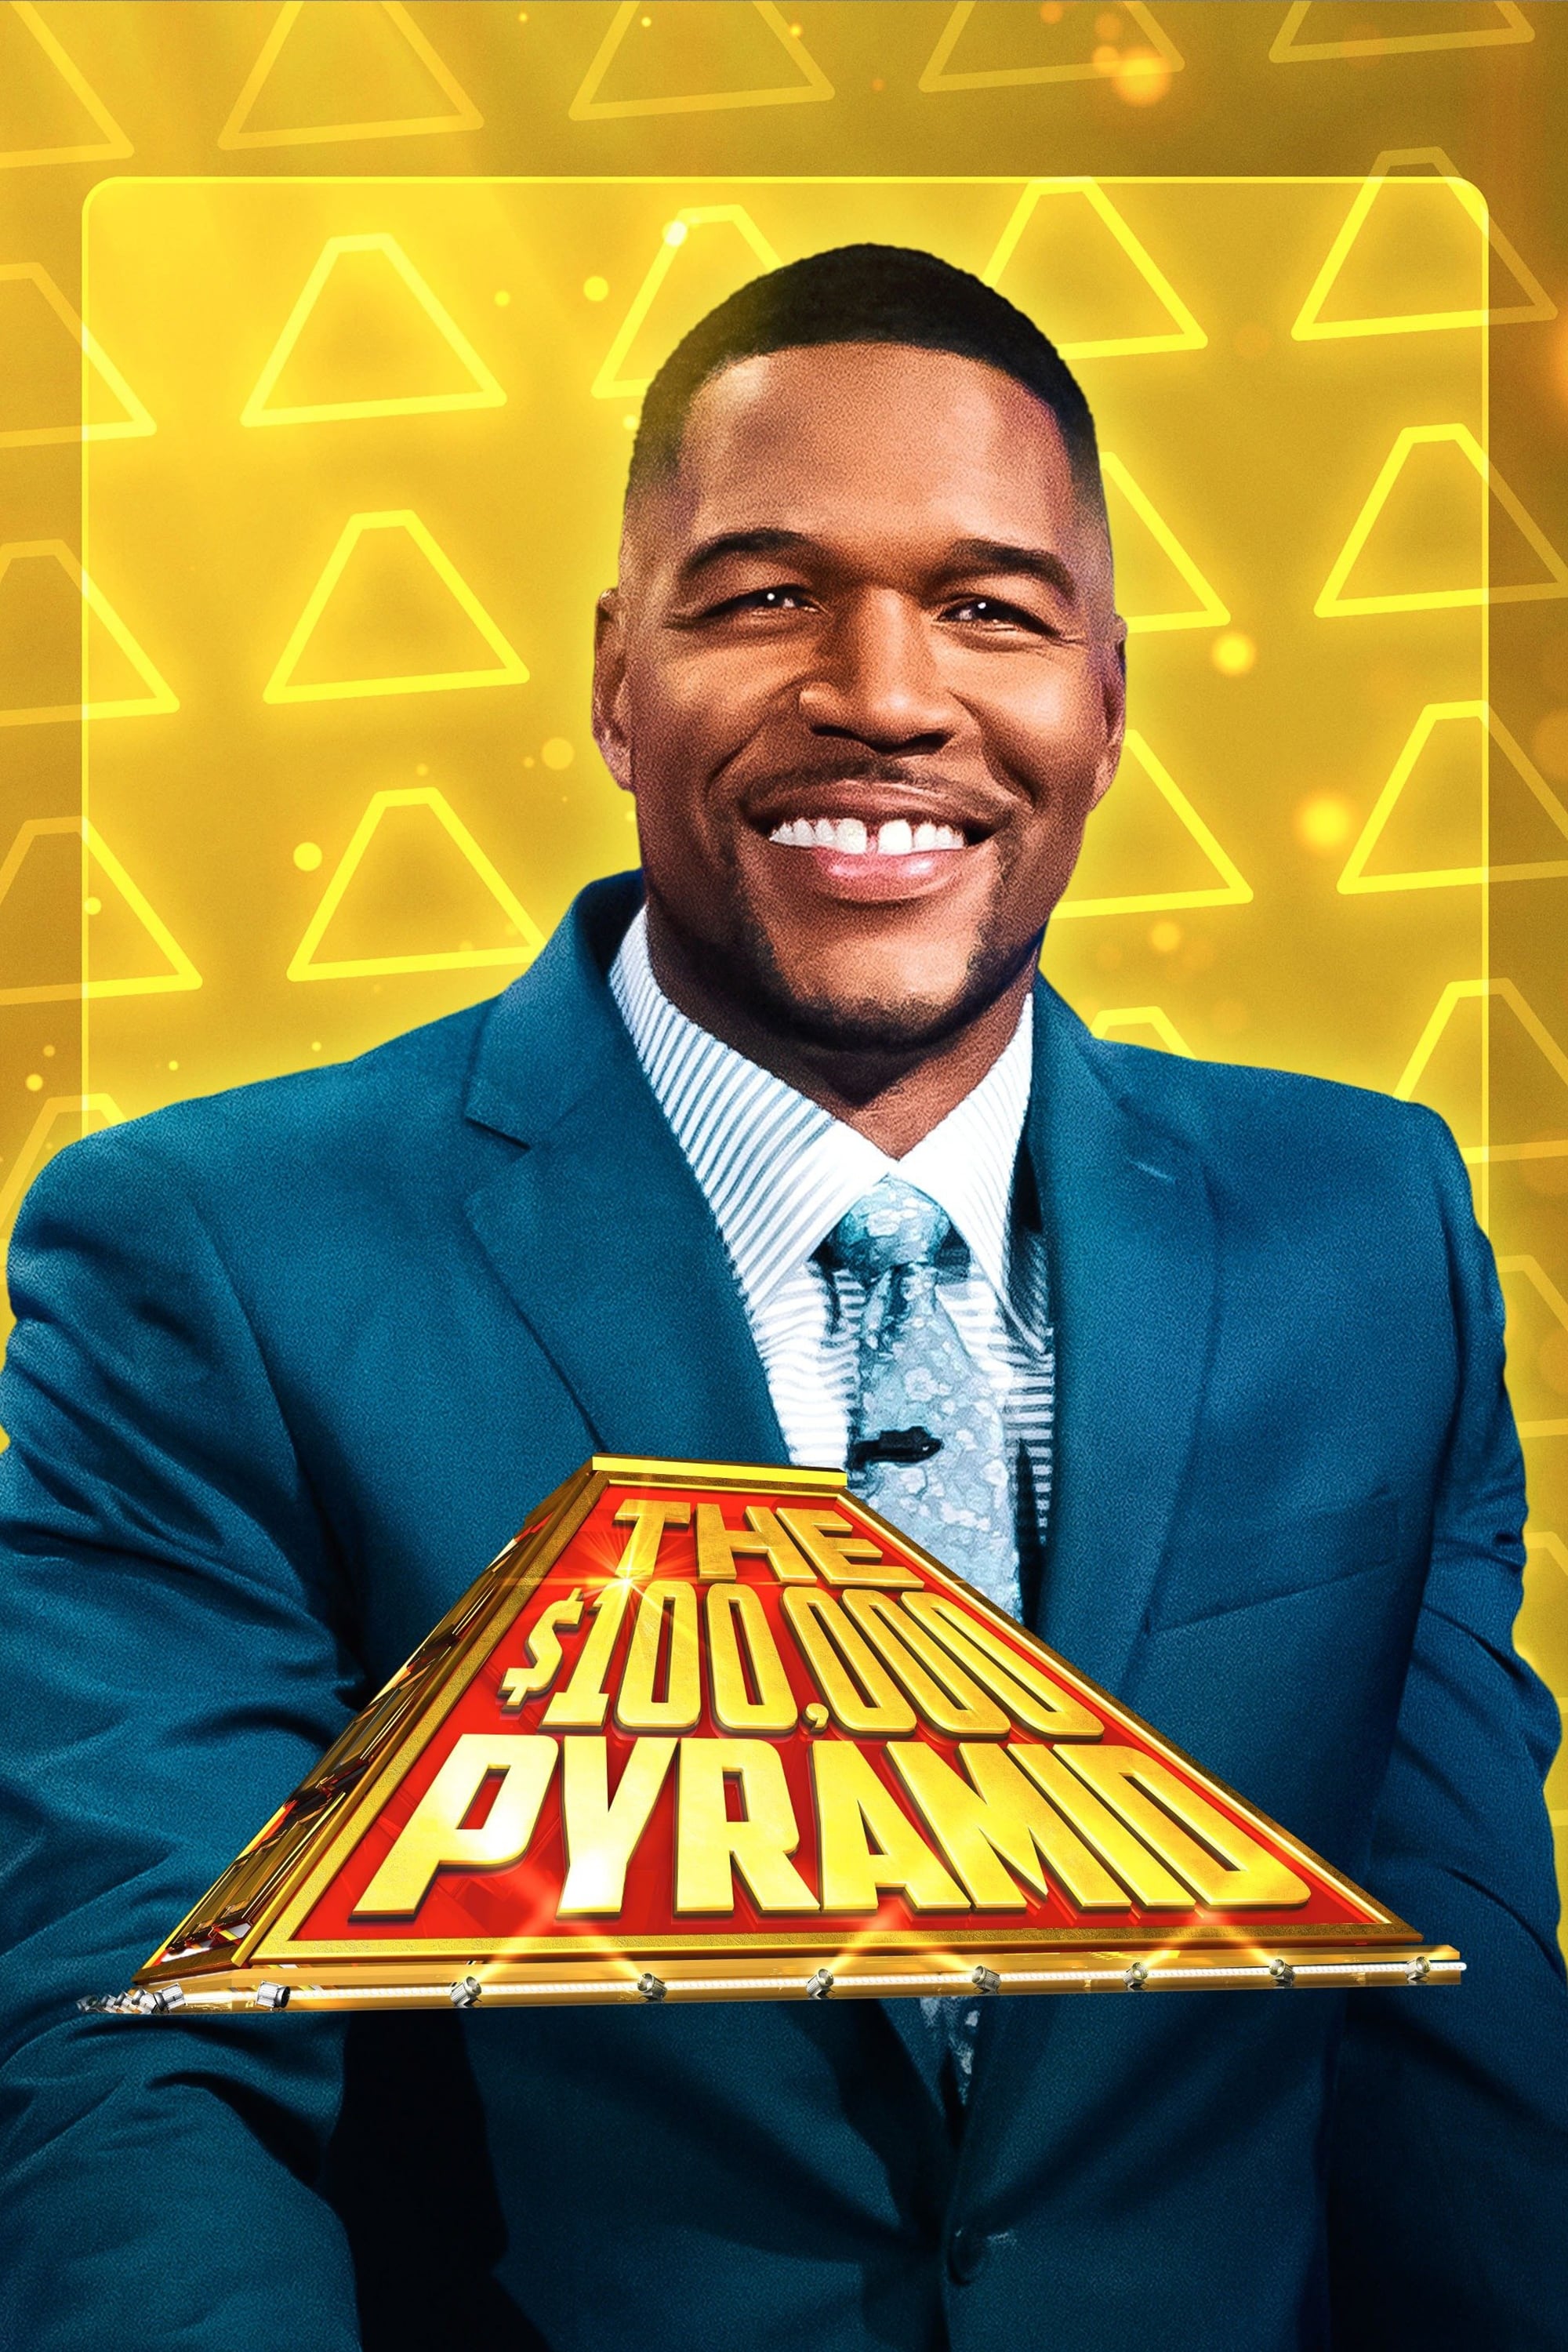 The $100,000 Pyramid (2016)